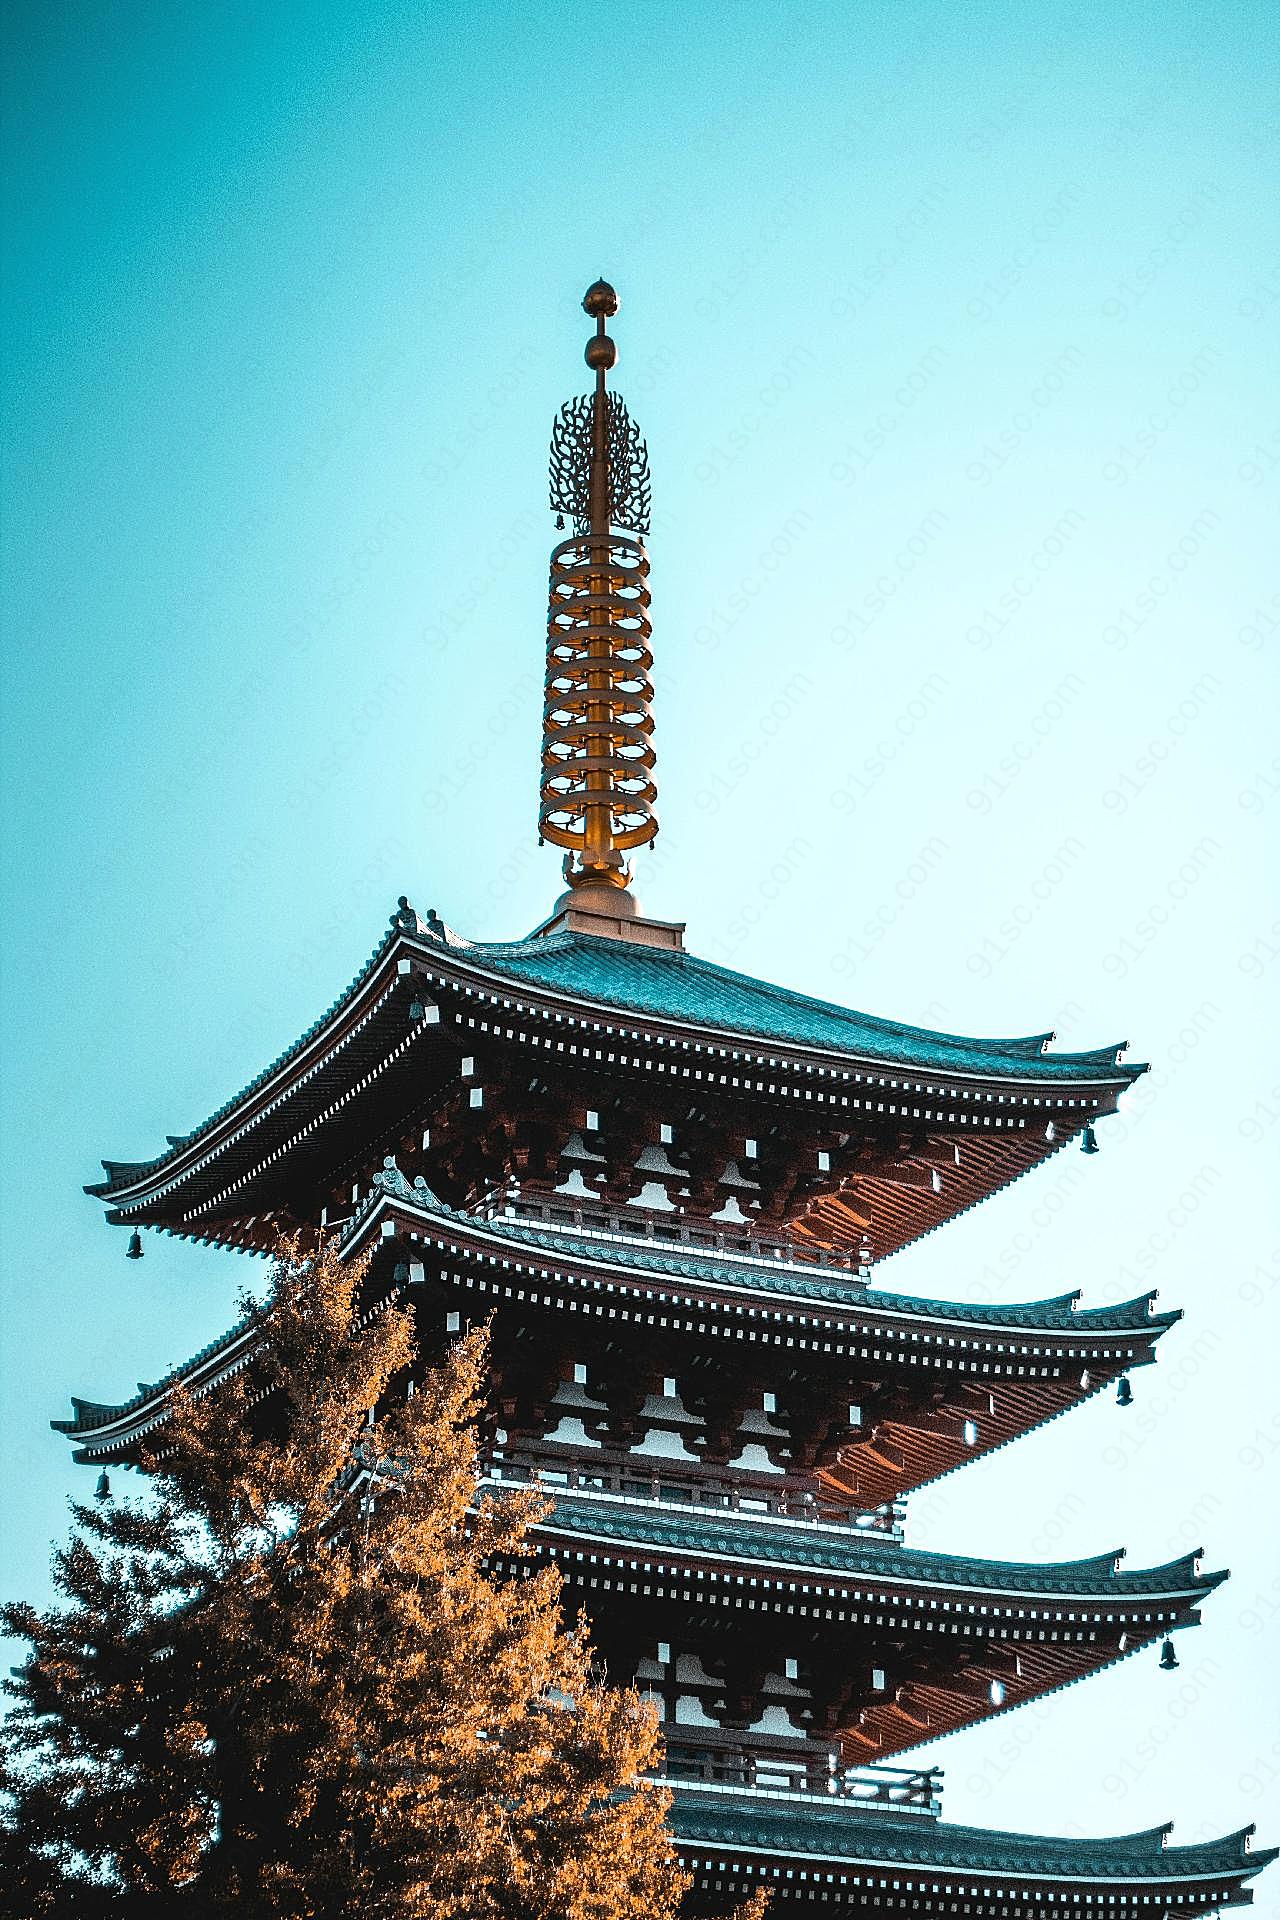 日本清水寺塔尖局部图片空间建筑